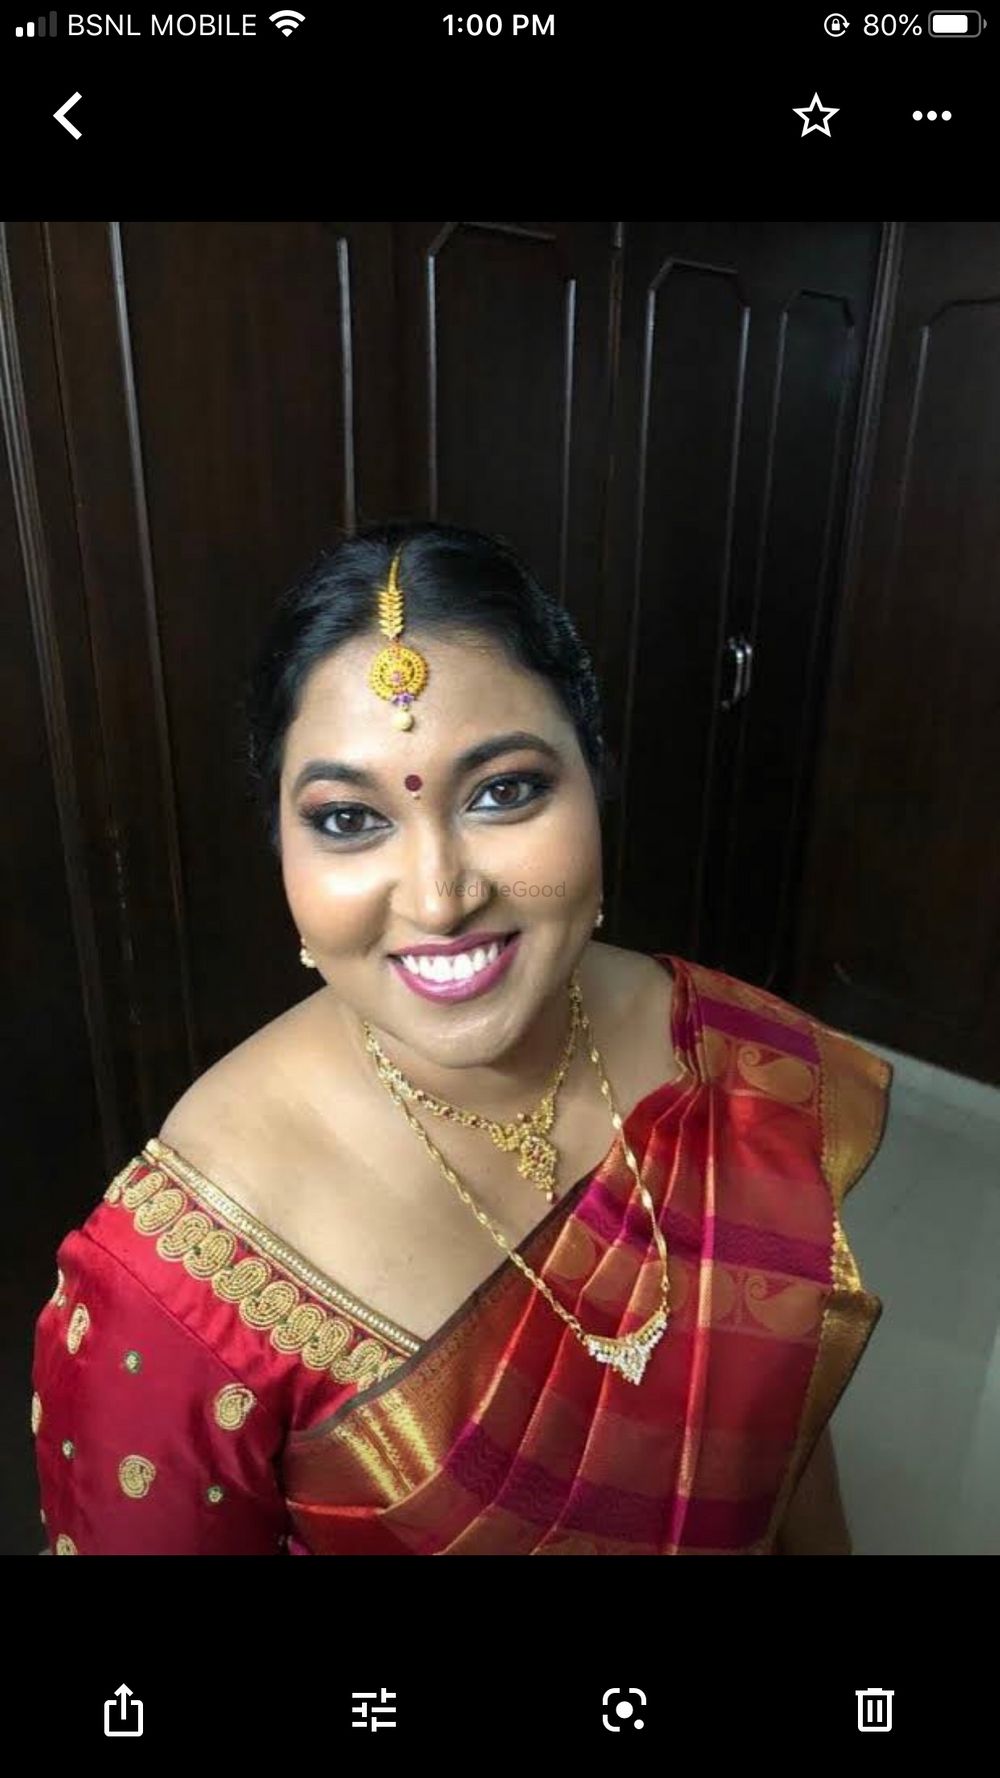 Photo By Sukhi Sudha - Bridal Makeup